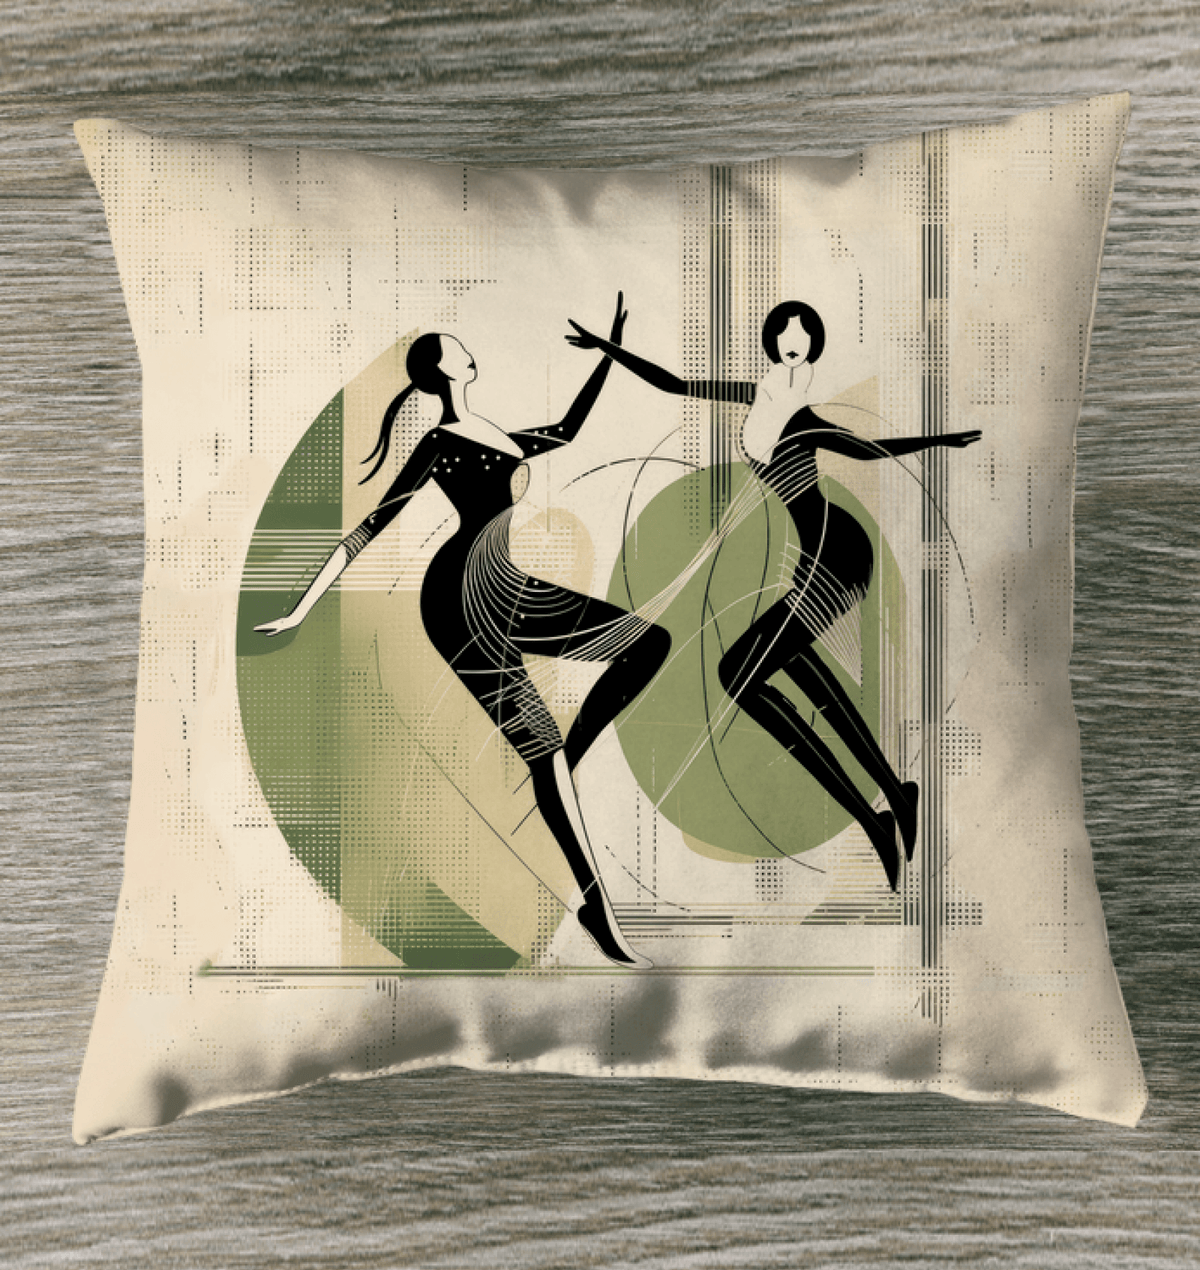 Graceful Women s Dance Attire Outdoor Pillow - Beyond T-shirts